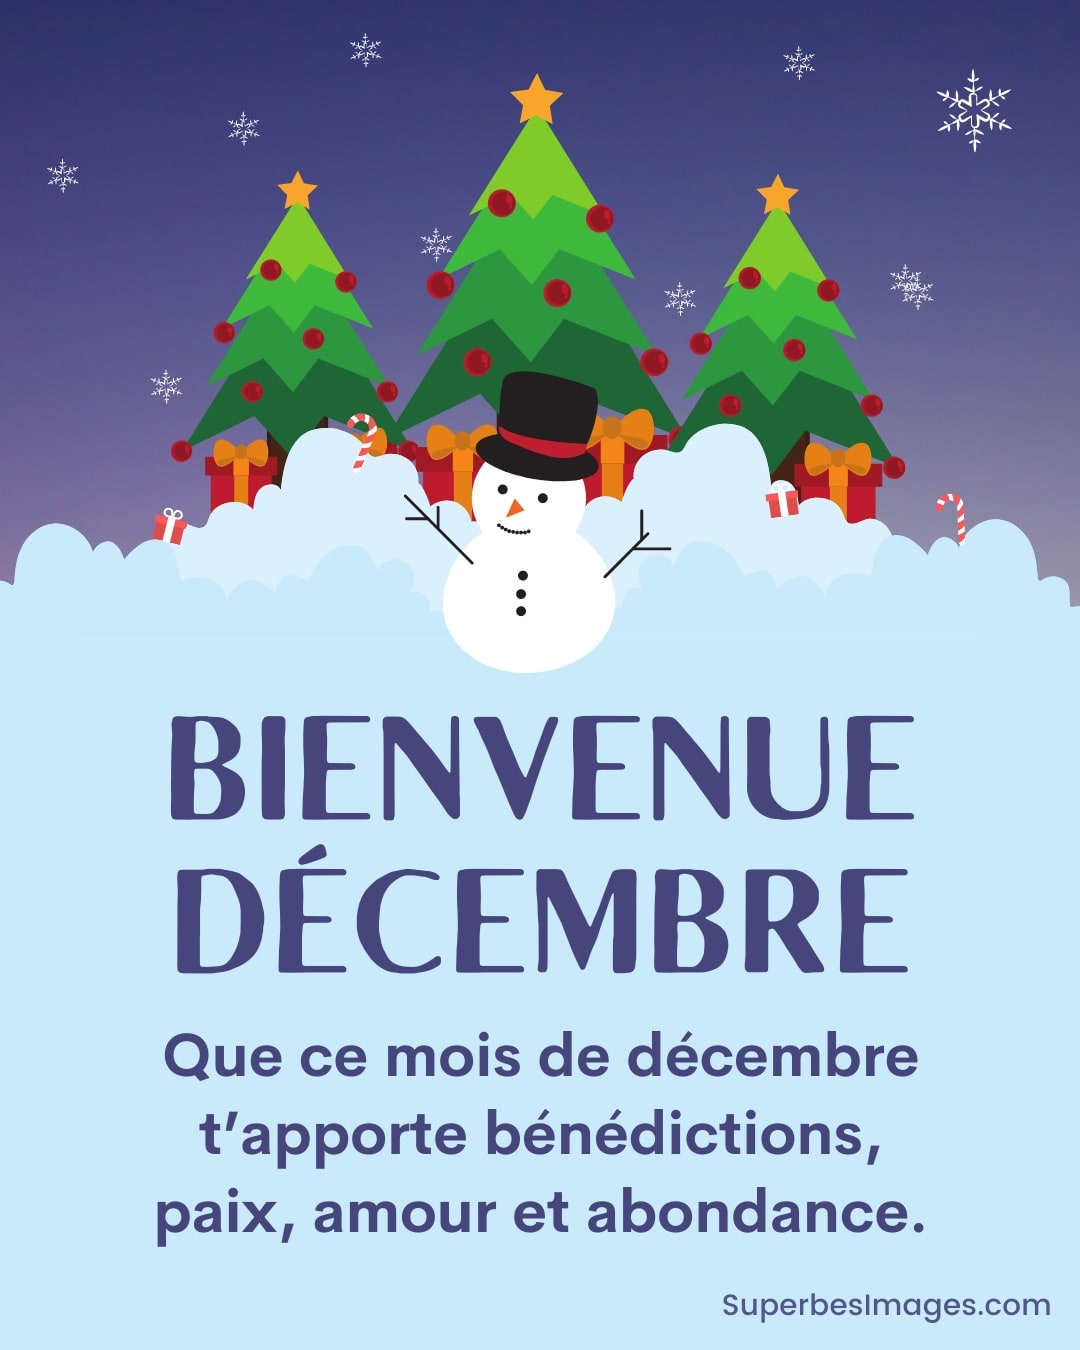 illustration de bonhomme de neige et d'arbres de noël la nuit, avec texte de bienvenue en décembre